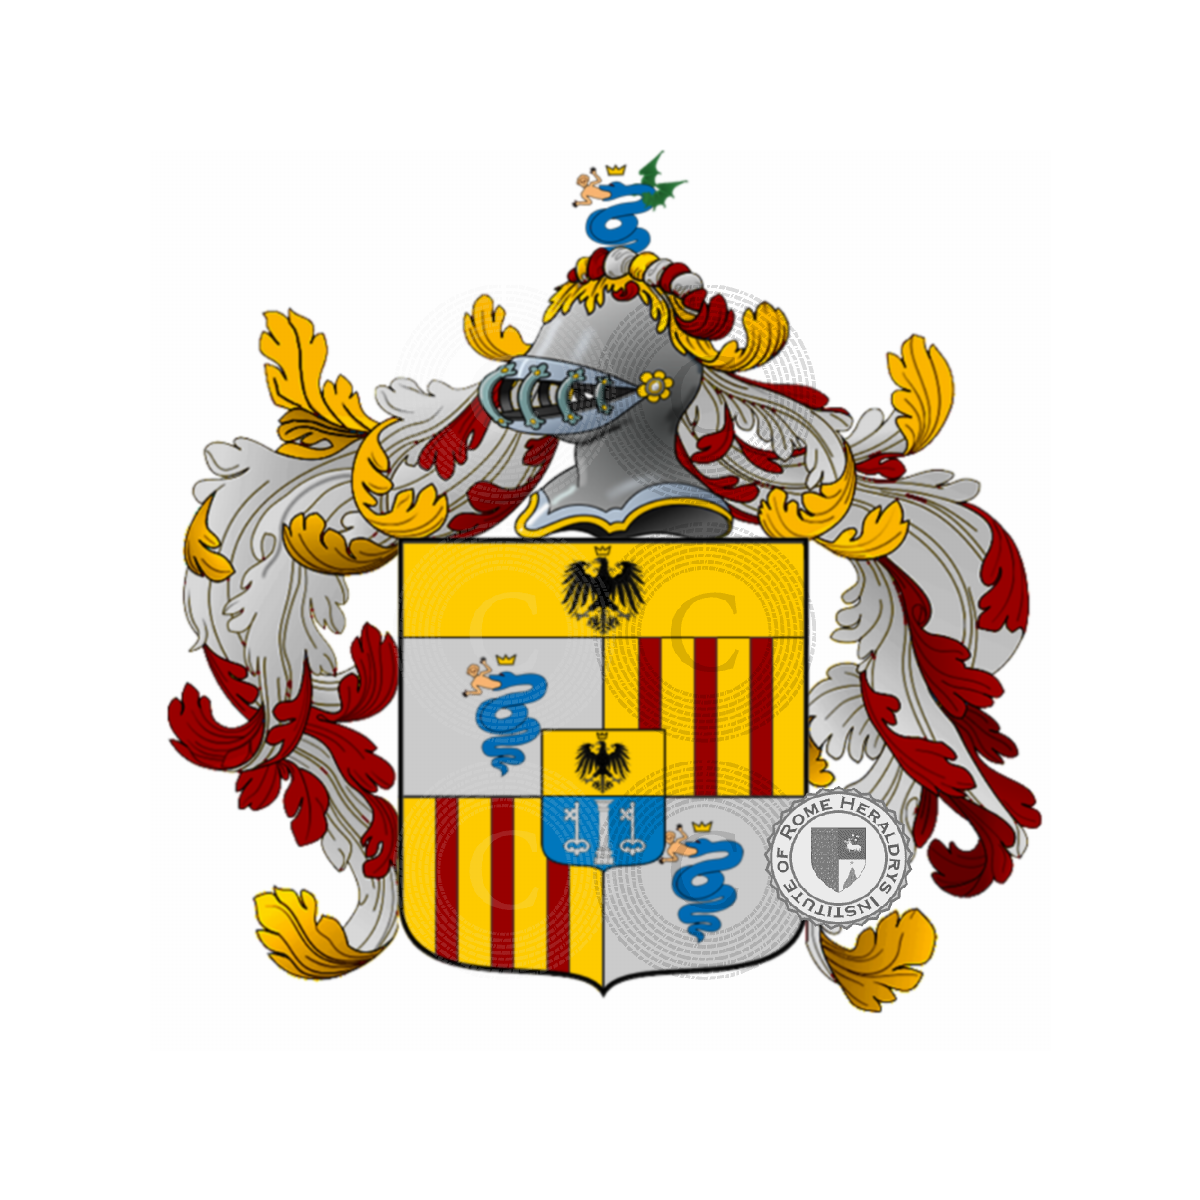 Wappen der Familievisconti d'aragona